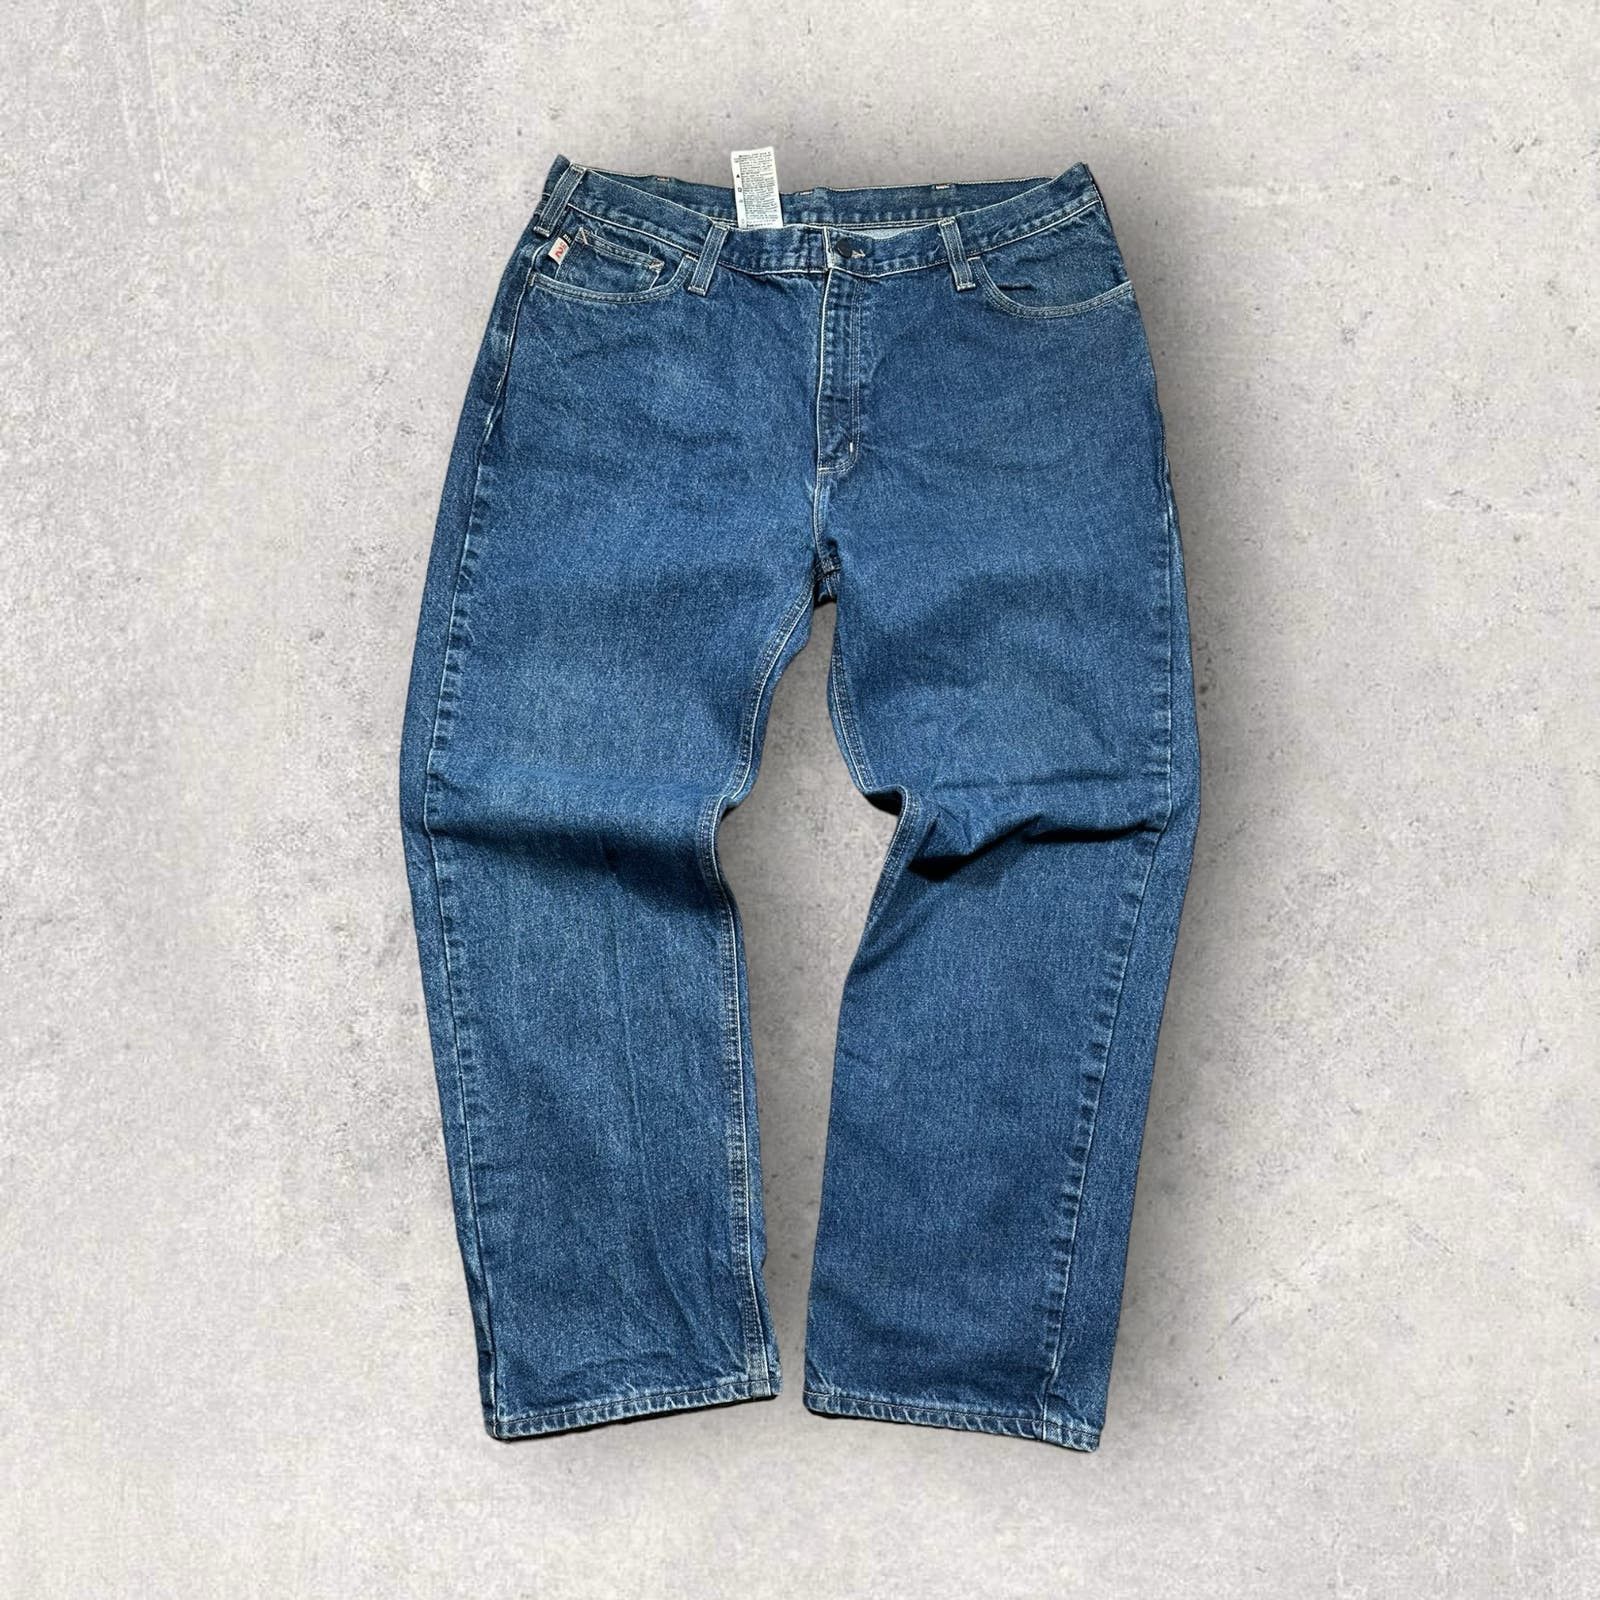 Vintage Vintage Carhartt Baggy Denim Jeans Size 40 Flame Retardant Size US 40 / EU 56 - 2 Preview